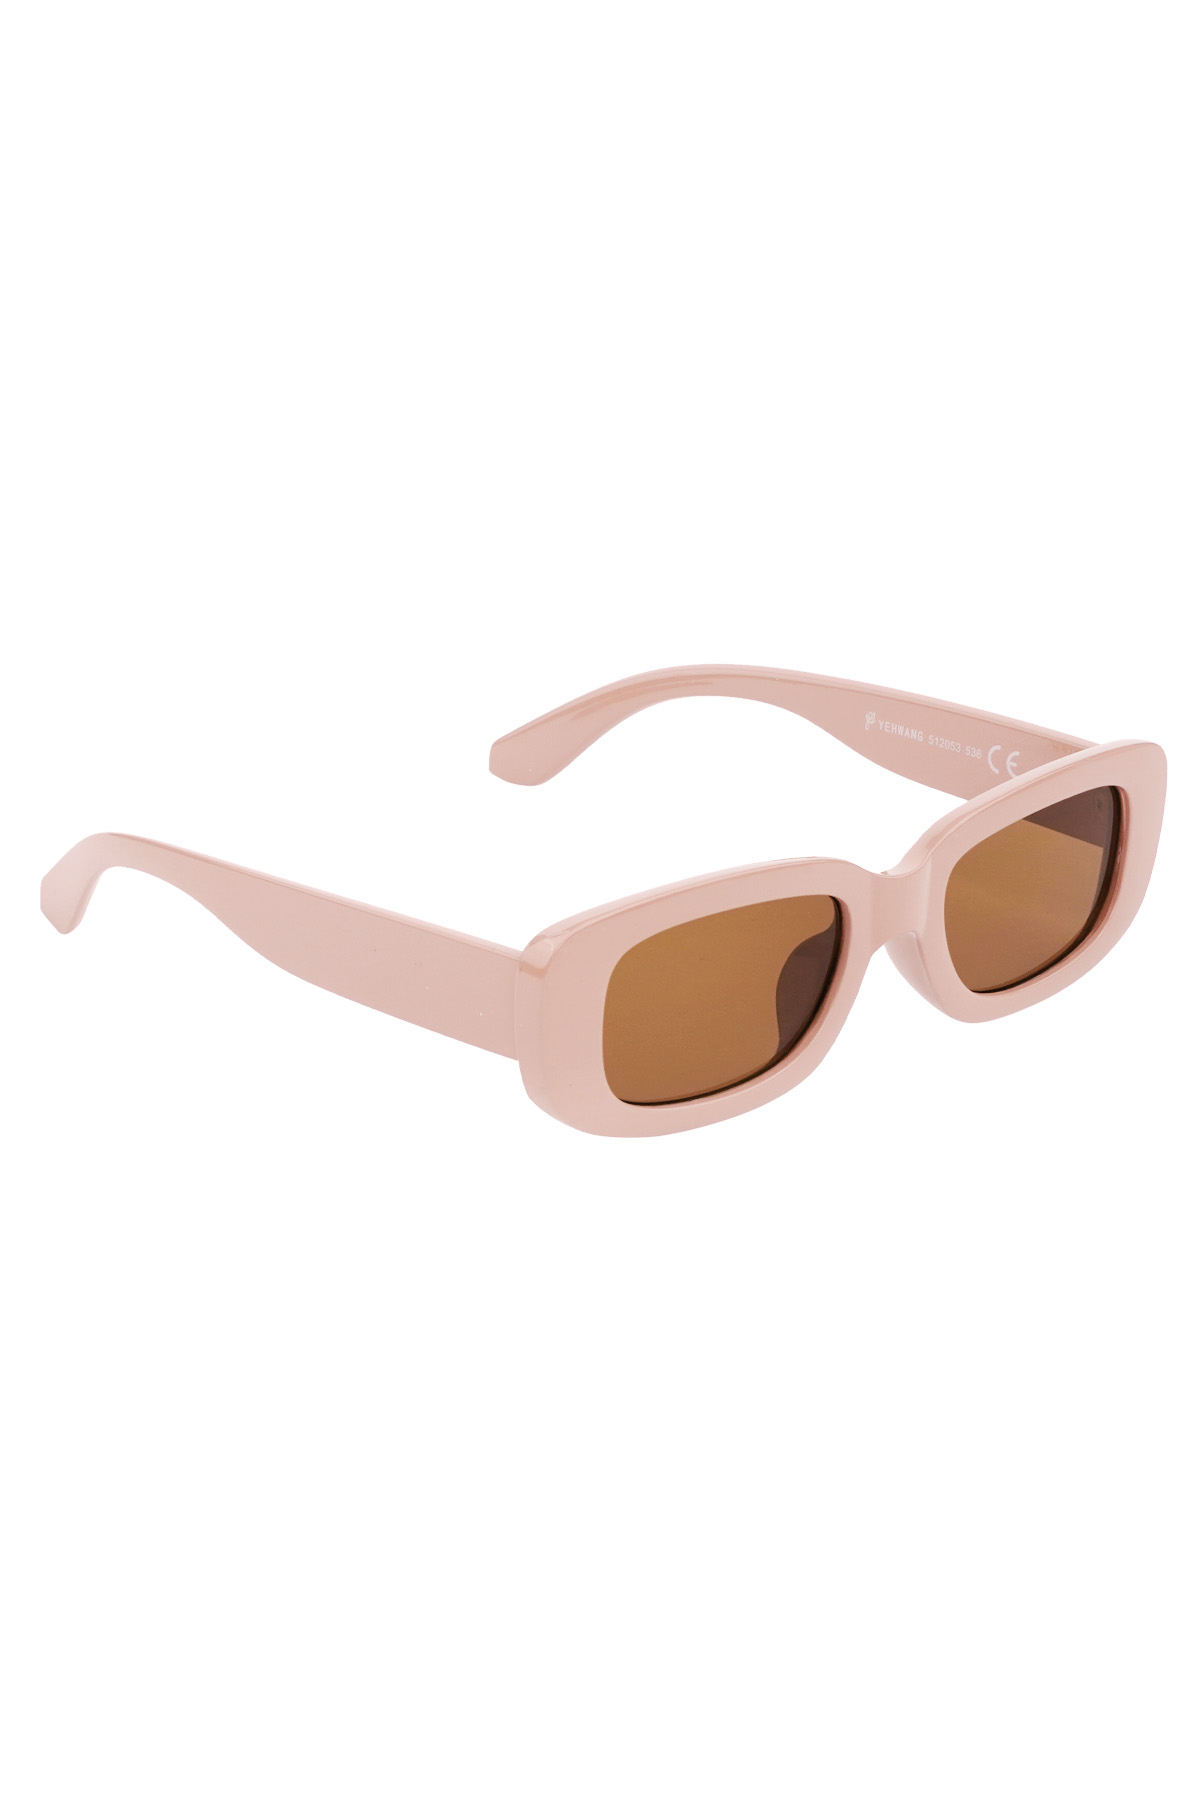 Simple retro sunglasses - beige